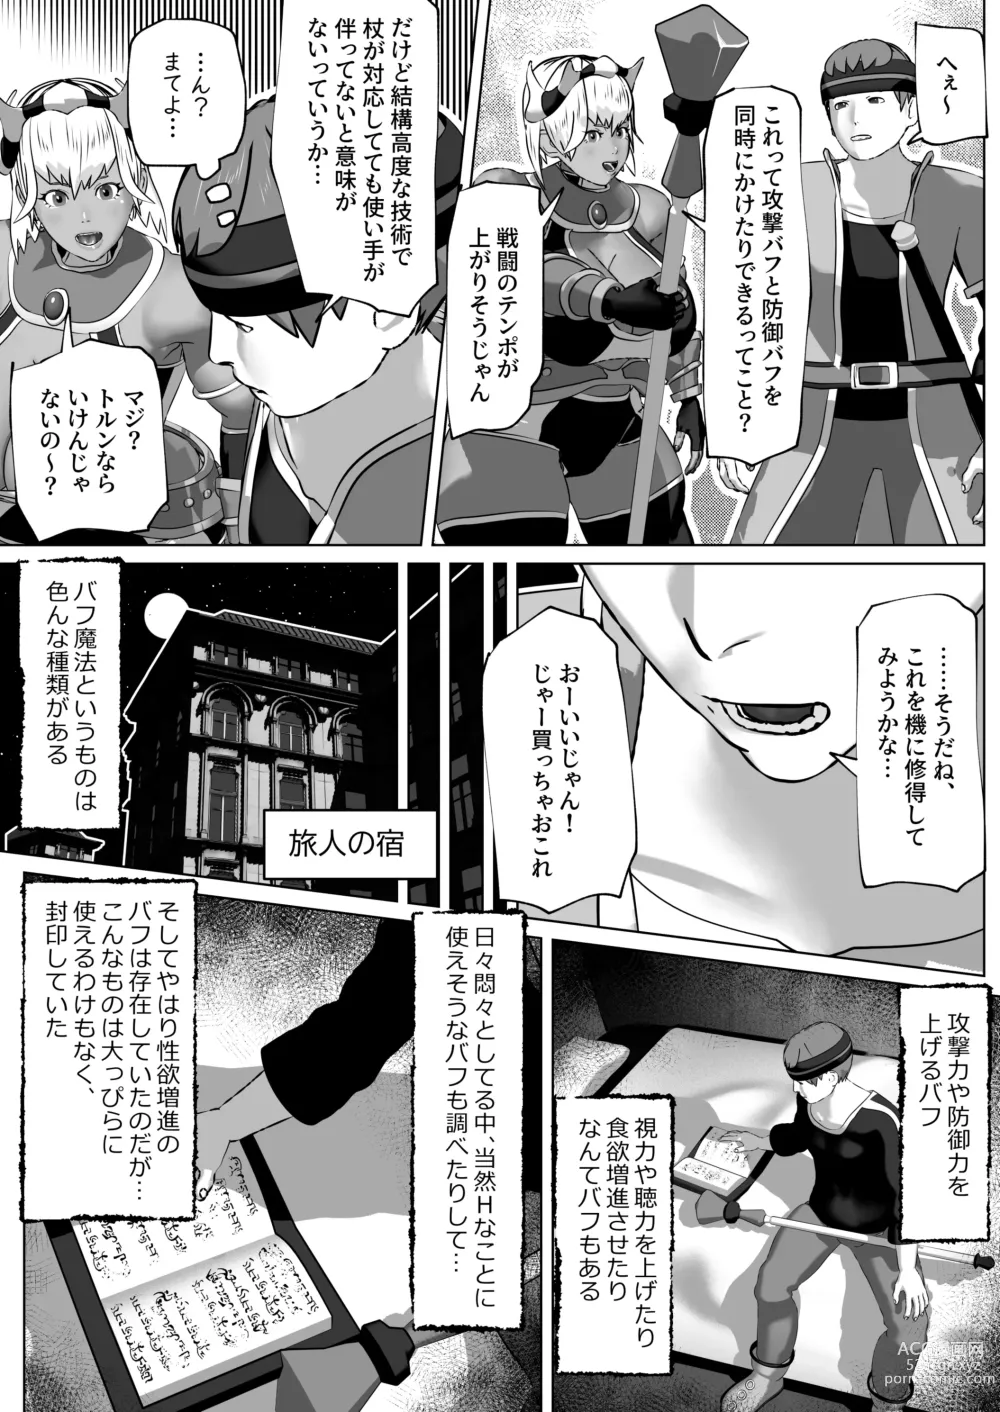 Page 7 of doujinshi Muramura Saseru Buff Mahou